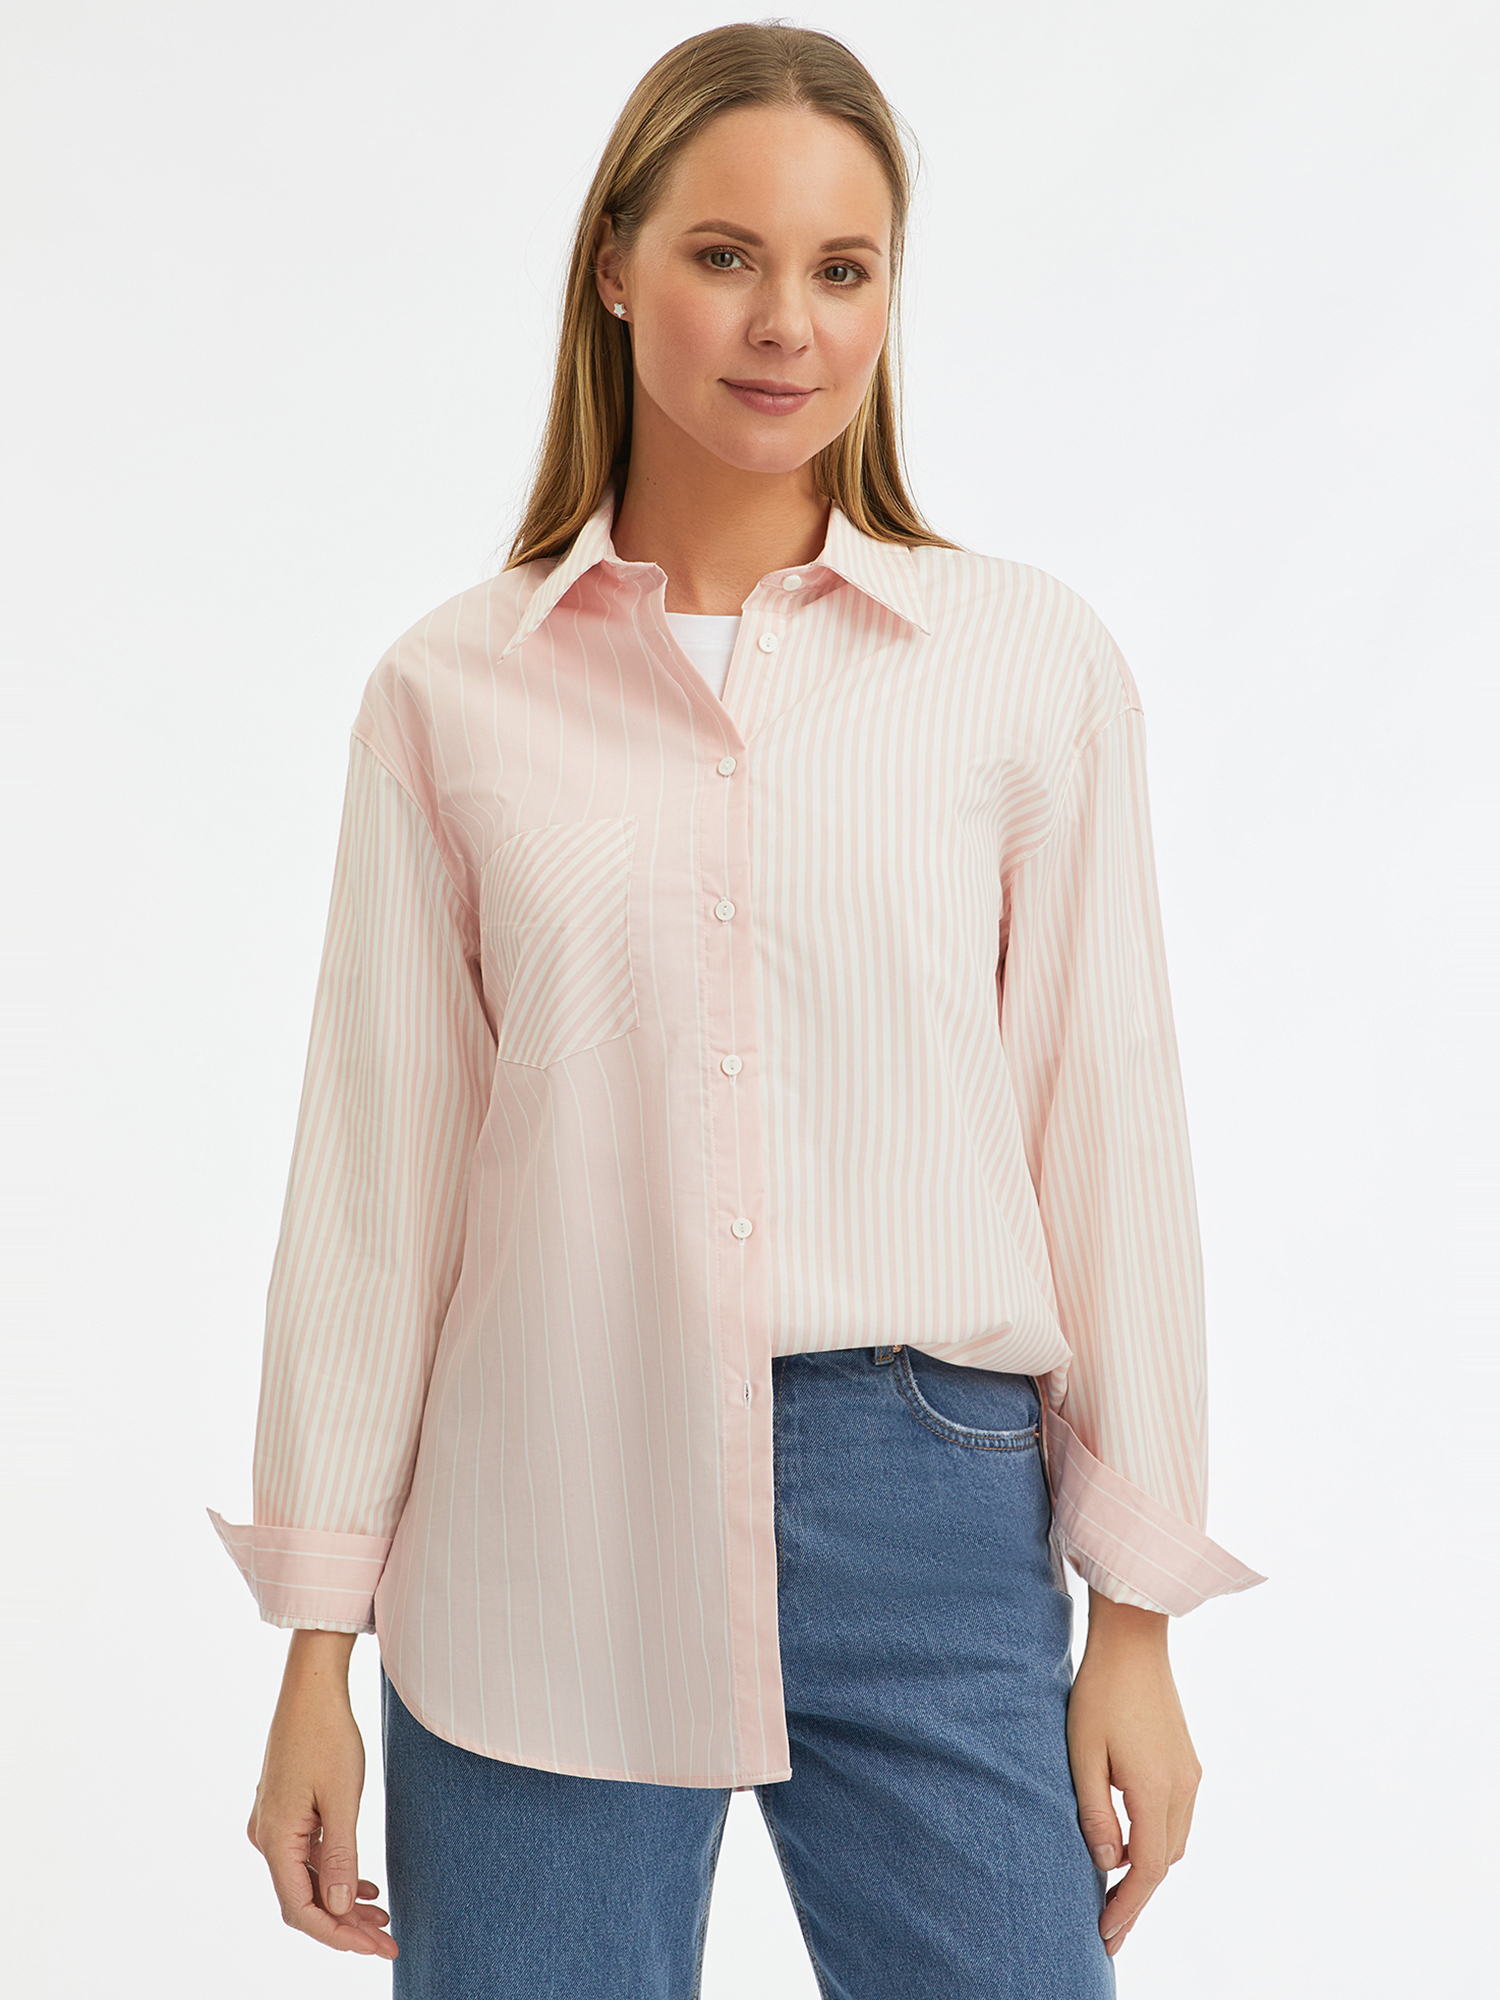 Рубашка женская oodji 13K11041-4 розовая 40 EU